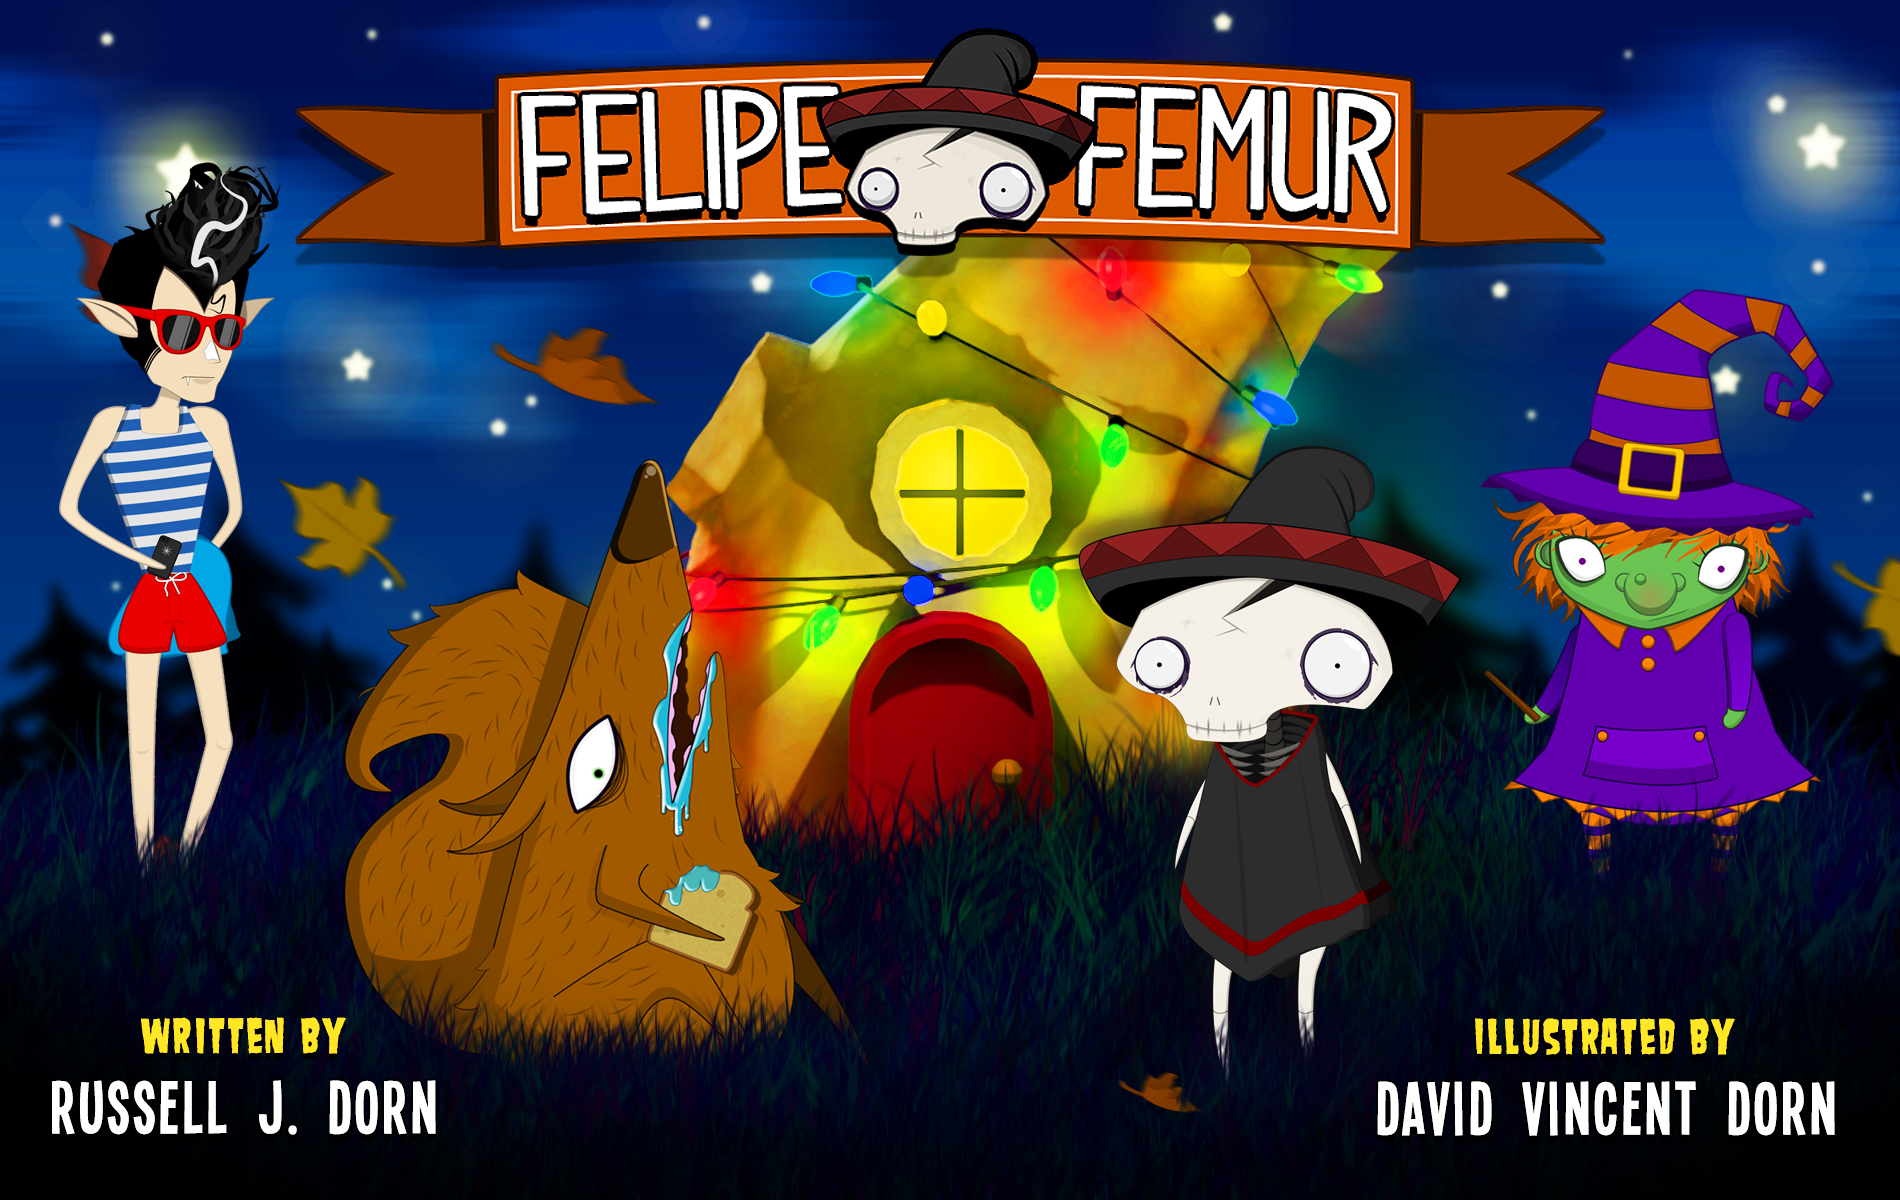 FREE: Felipe Femur: Original Bedtime Story by Russell J. Dorn